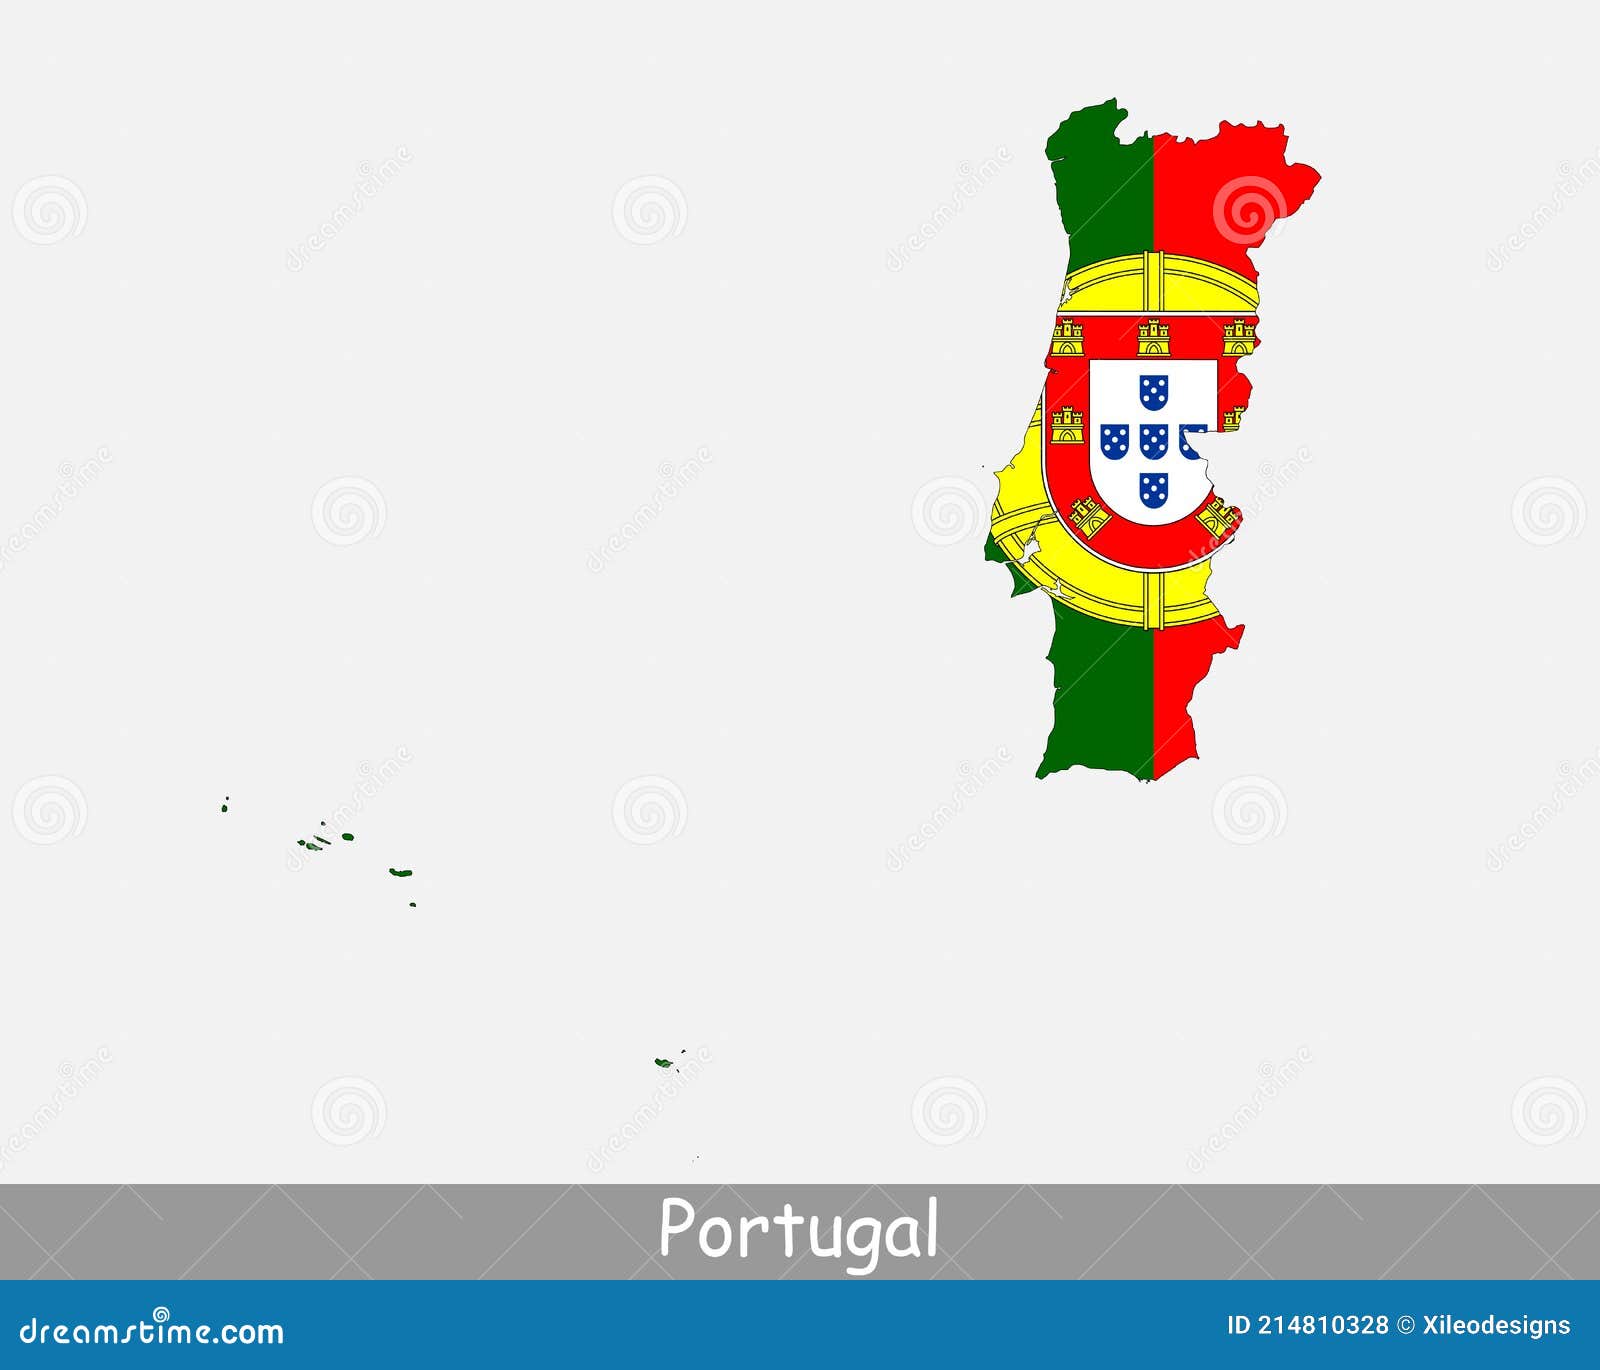 bandeira do mapa de portugal. ilustração vetorial com um mapa da europa e  país destacado com bandeira nacional 5175932 Vetor no Vecteezy